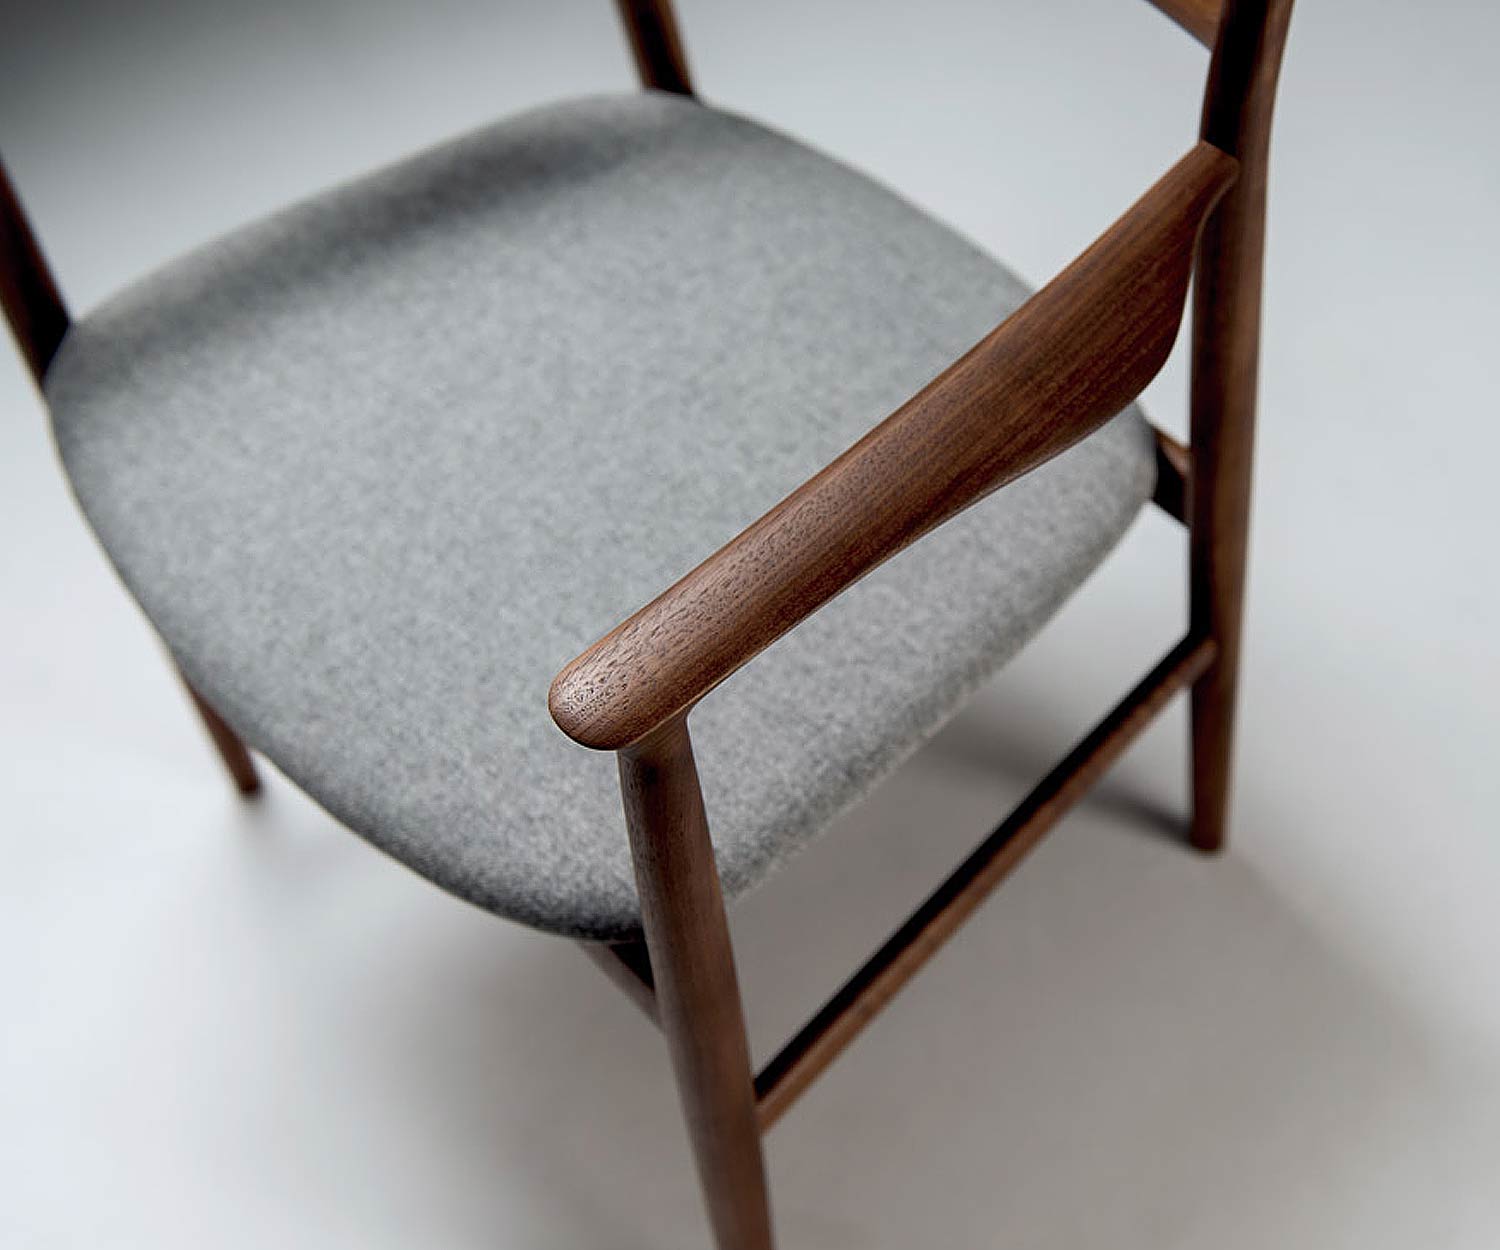 Conde House Kamuy Design Tisch & Stuhl mit Stuhl Gestell in Nussbaum massiv